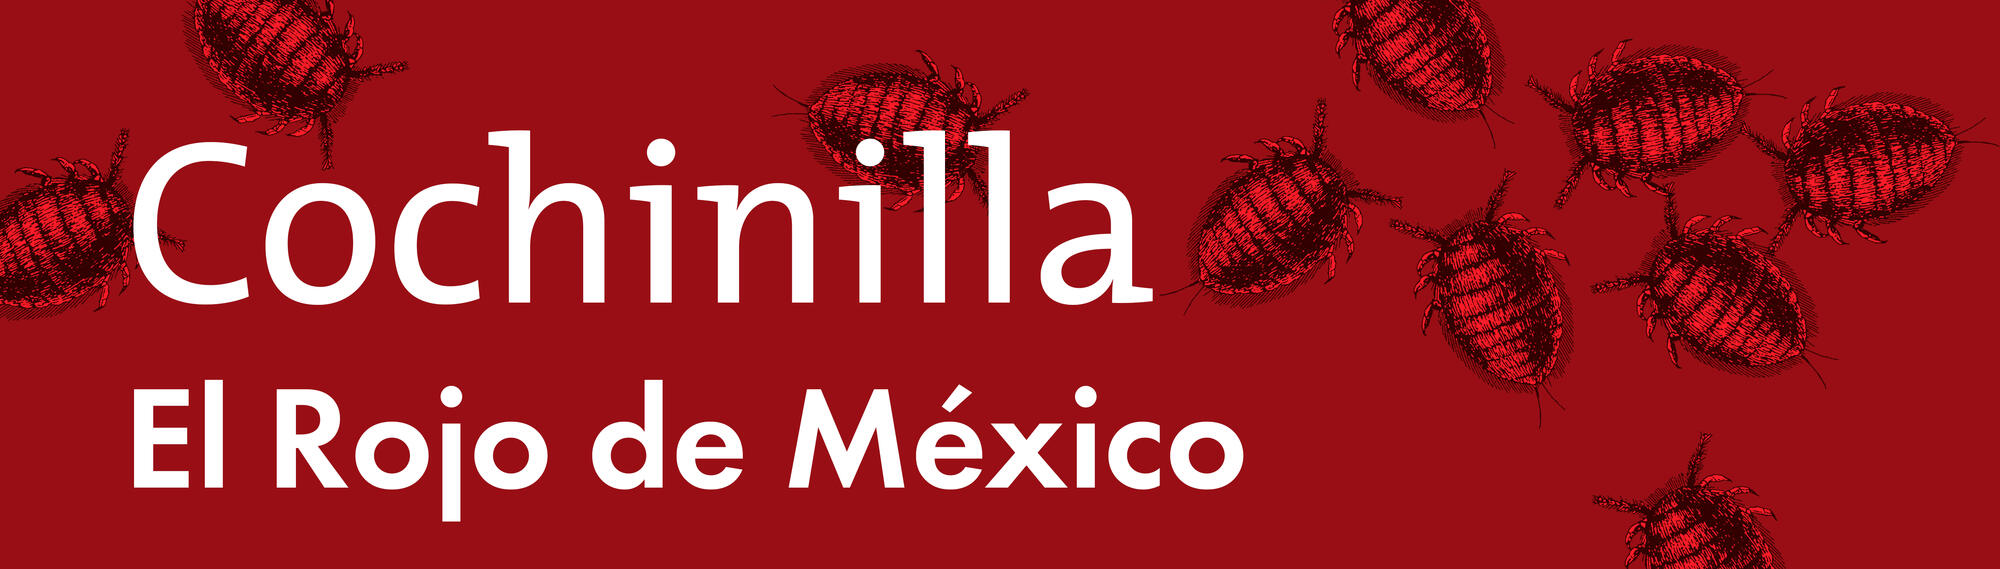 Spanish text &quot;Cochinilla El Rojo de México&quot;.